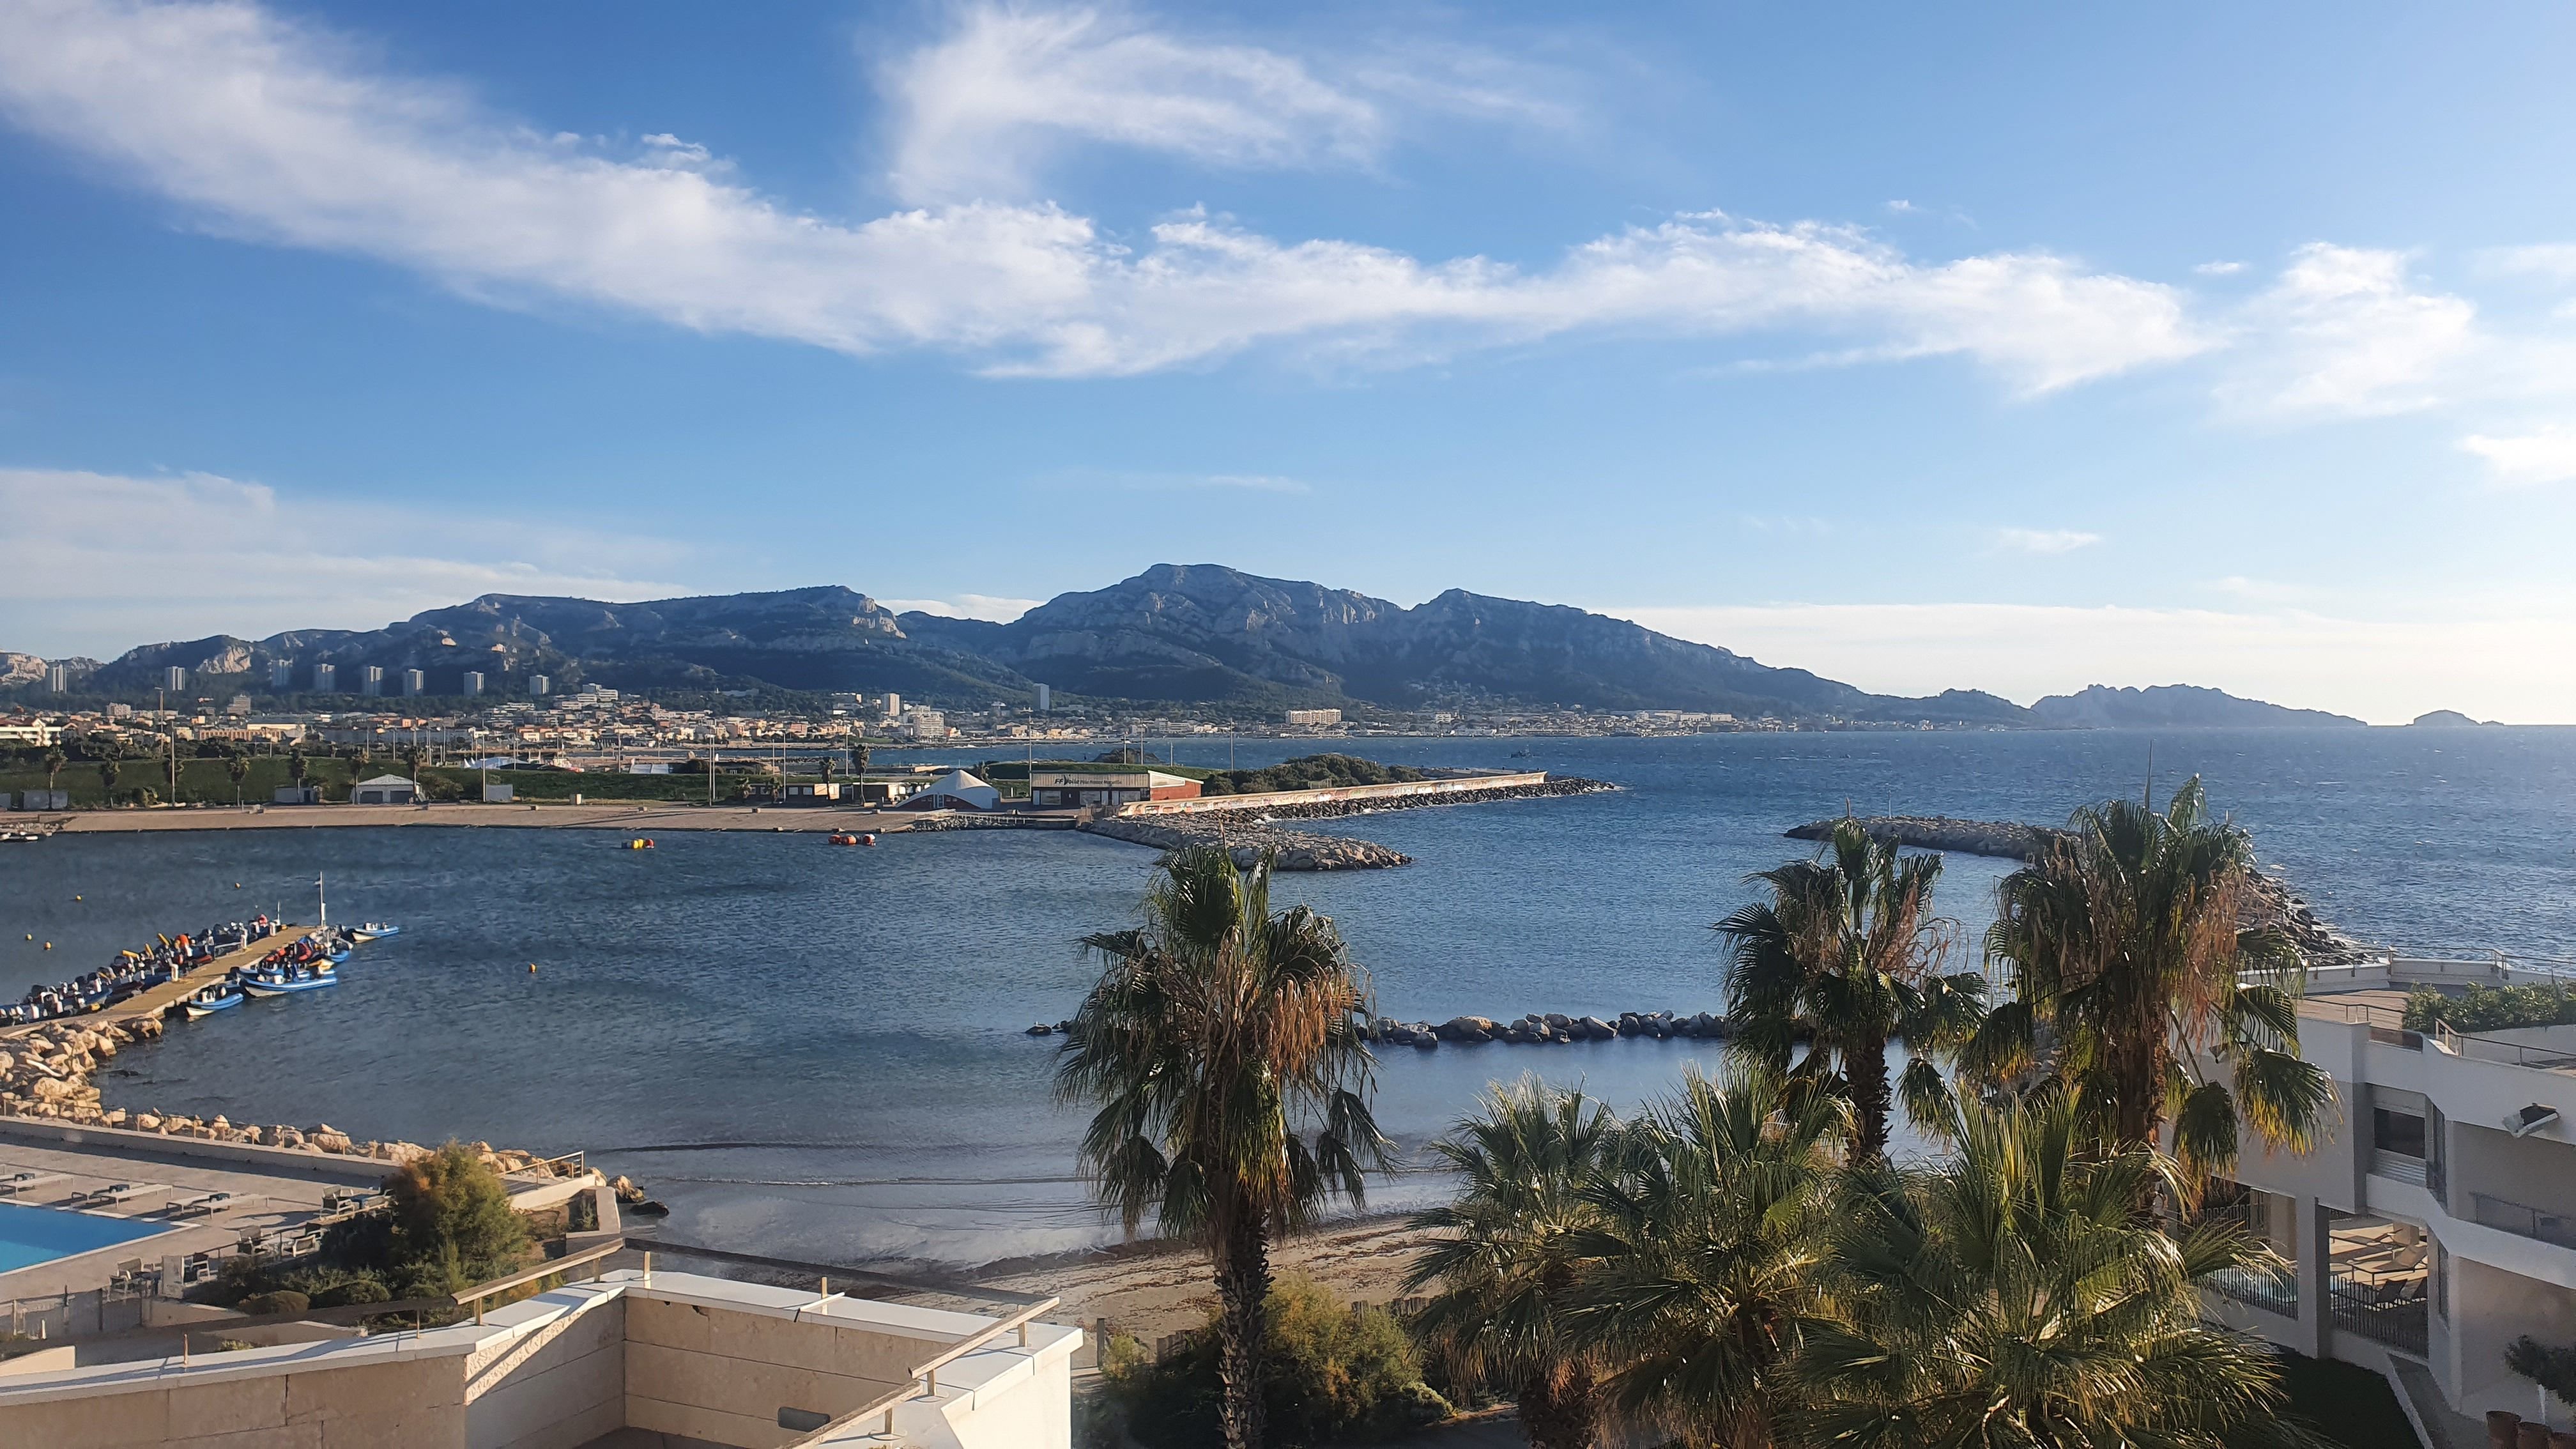 C'est dans la rade sud de Marseille, sur les plages du Roucas Blanc, que la marina olympique s'élèvera bientôt pour accueillir les épreuves de voile des Jeux olympiques de Paris 2024. LP/Marc Leras